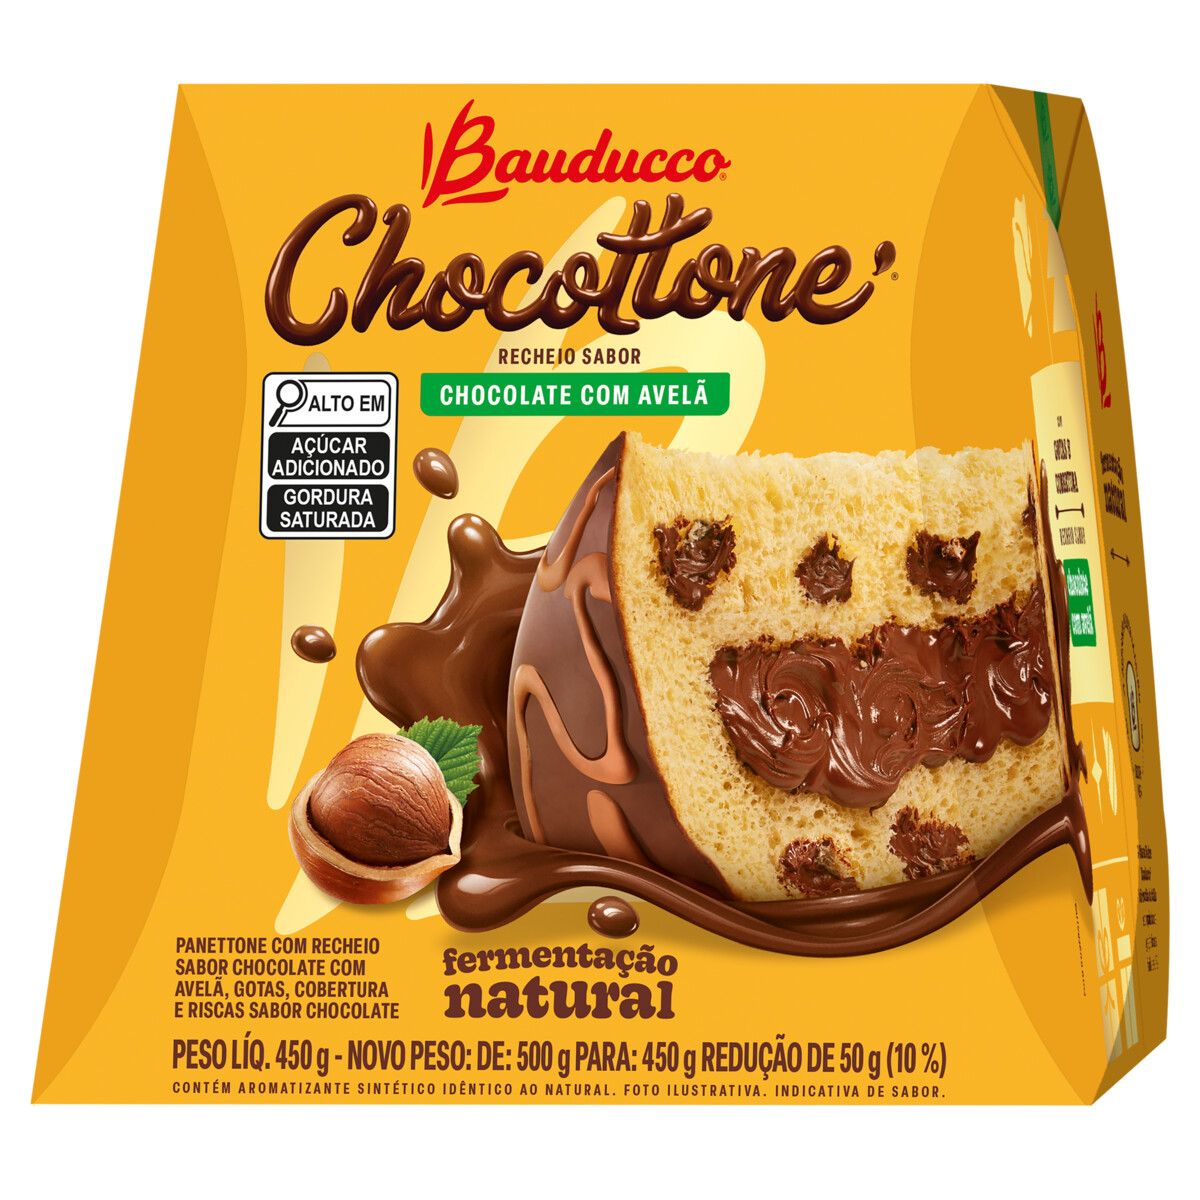 Chocottone Bauducco Recheio Chocolate com Avelã Caixa 450g